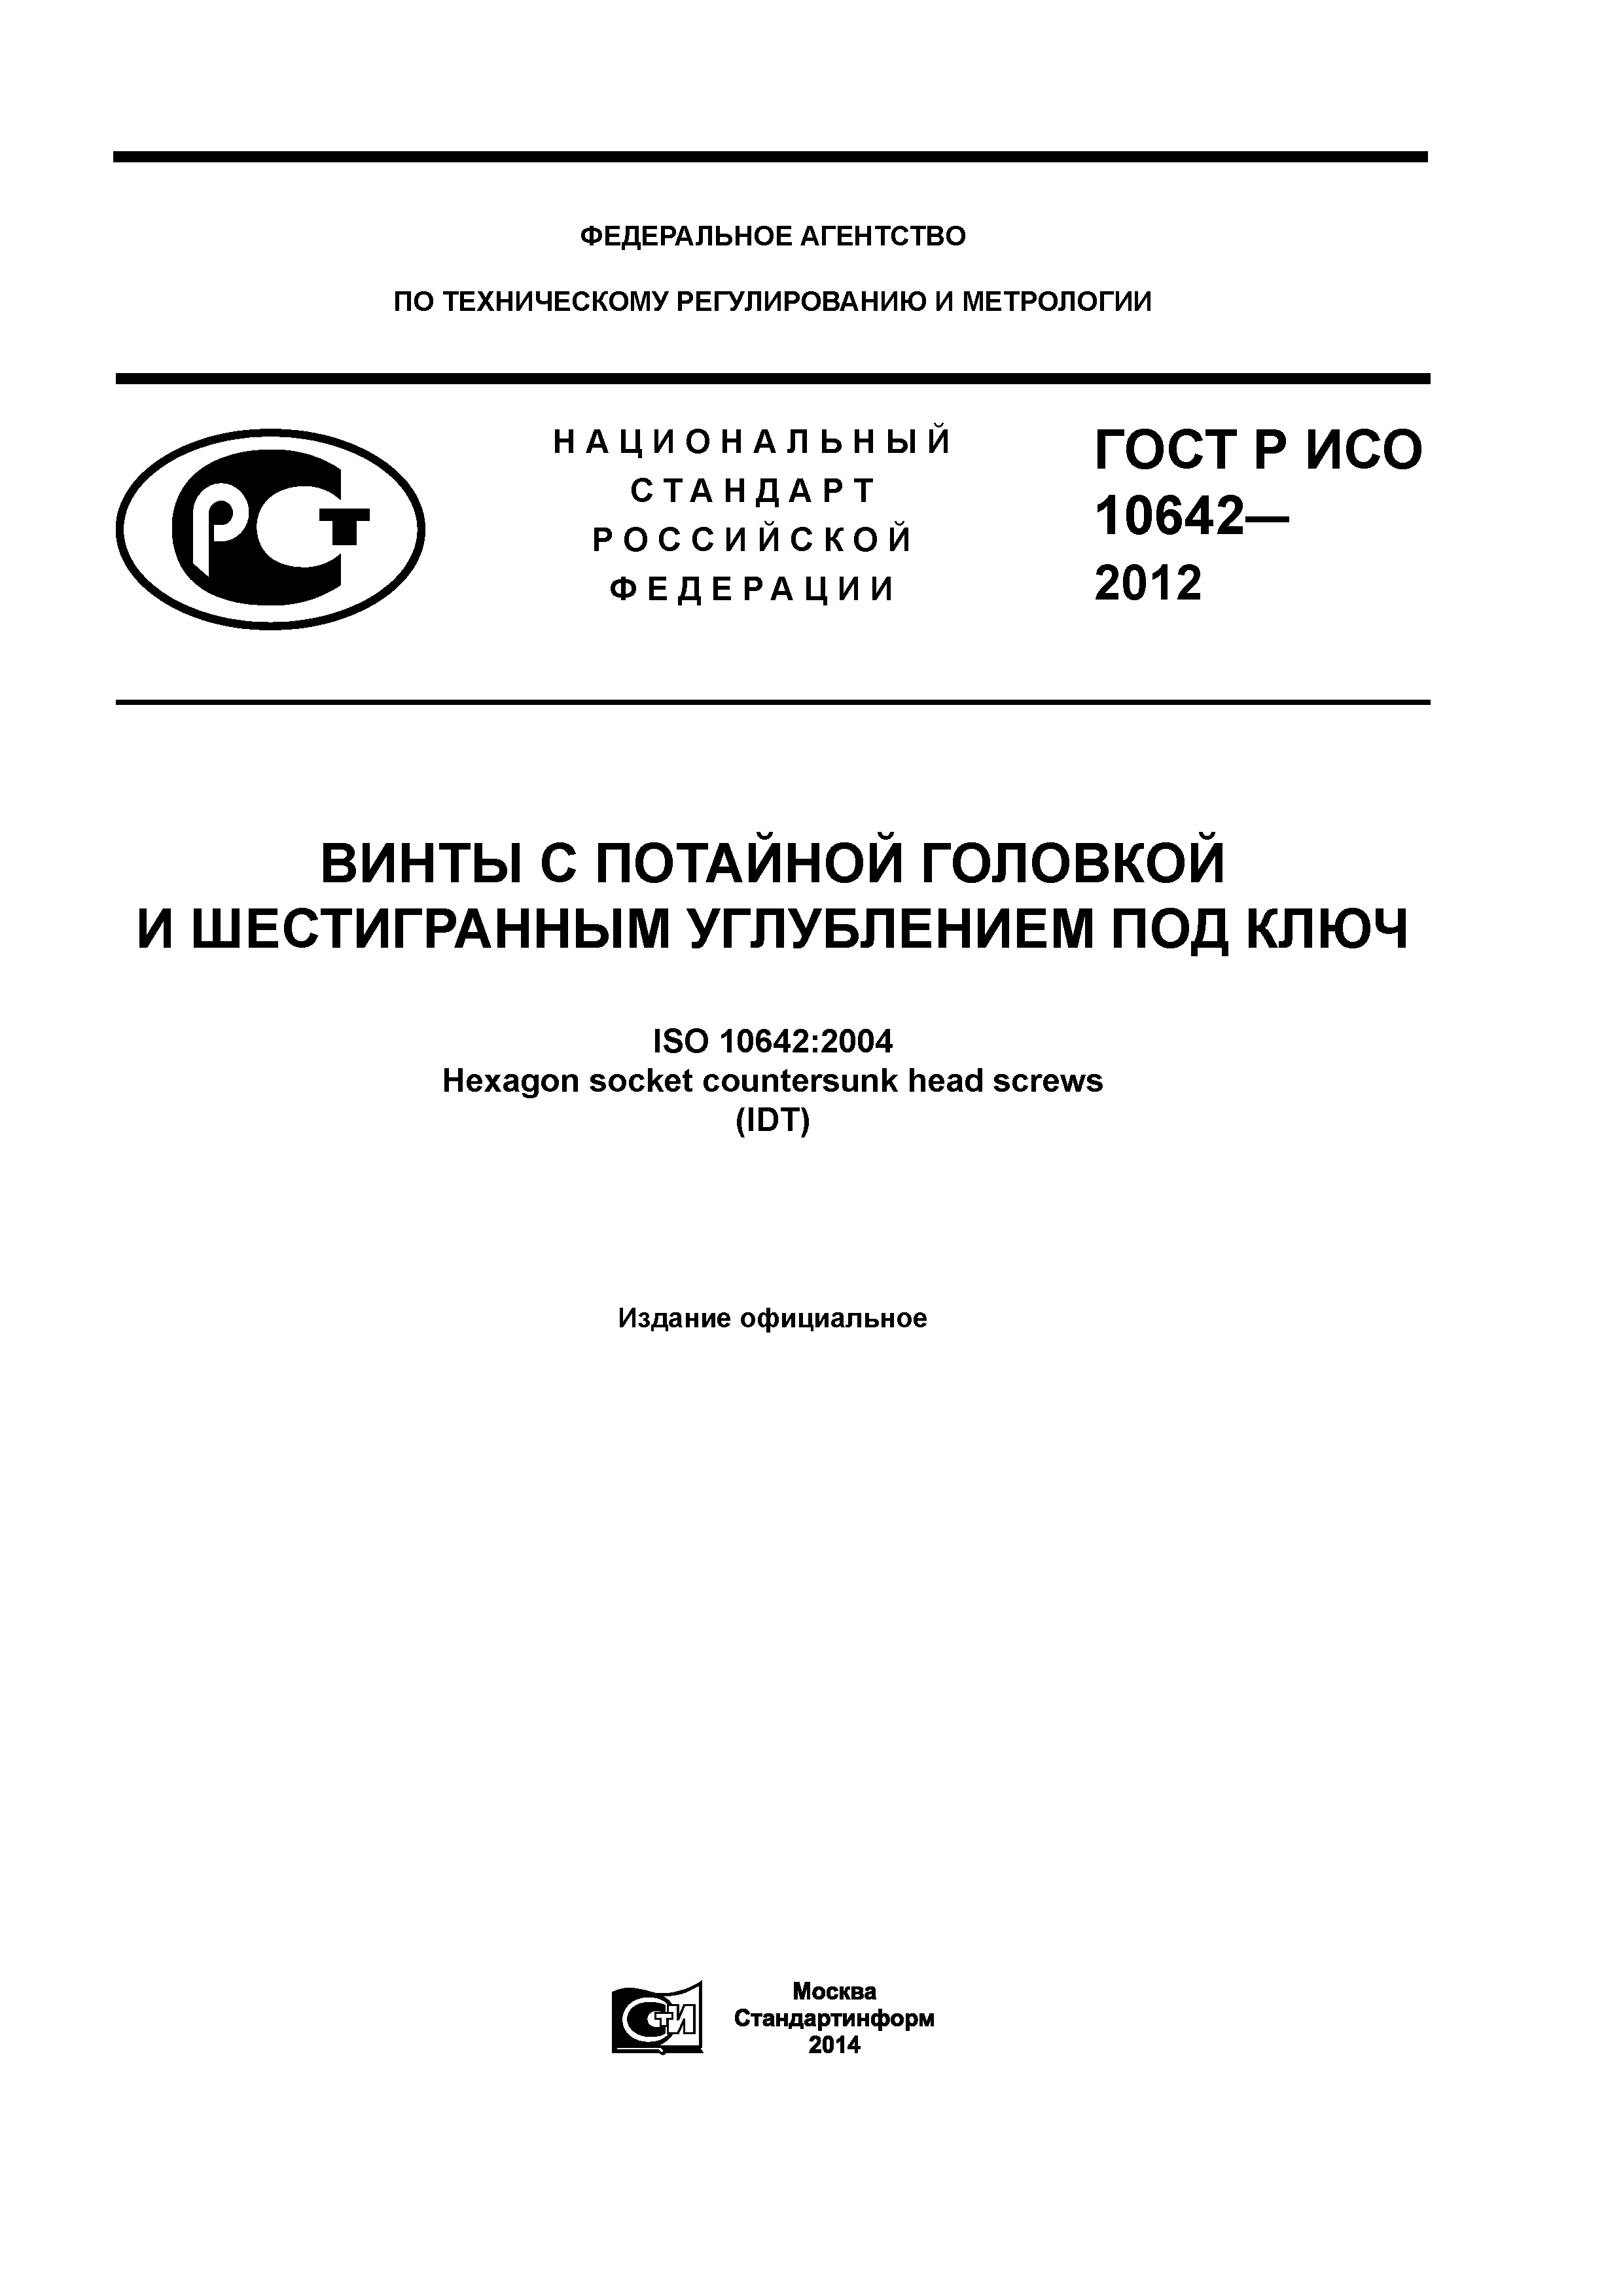 ГОСТ Р ИСО 10642-2012